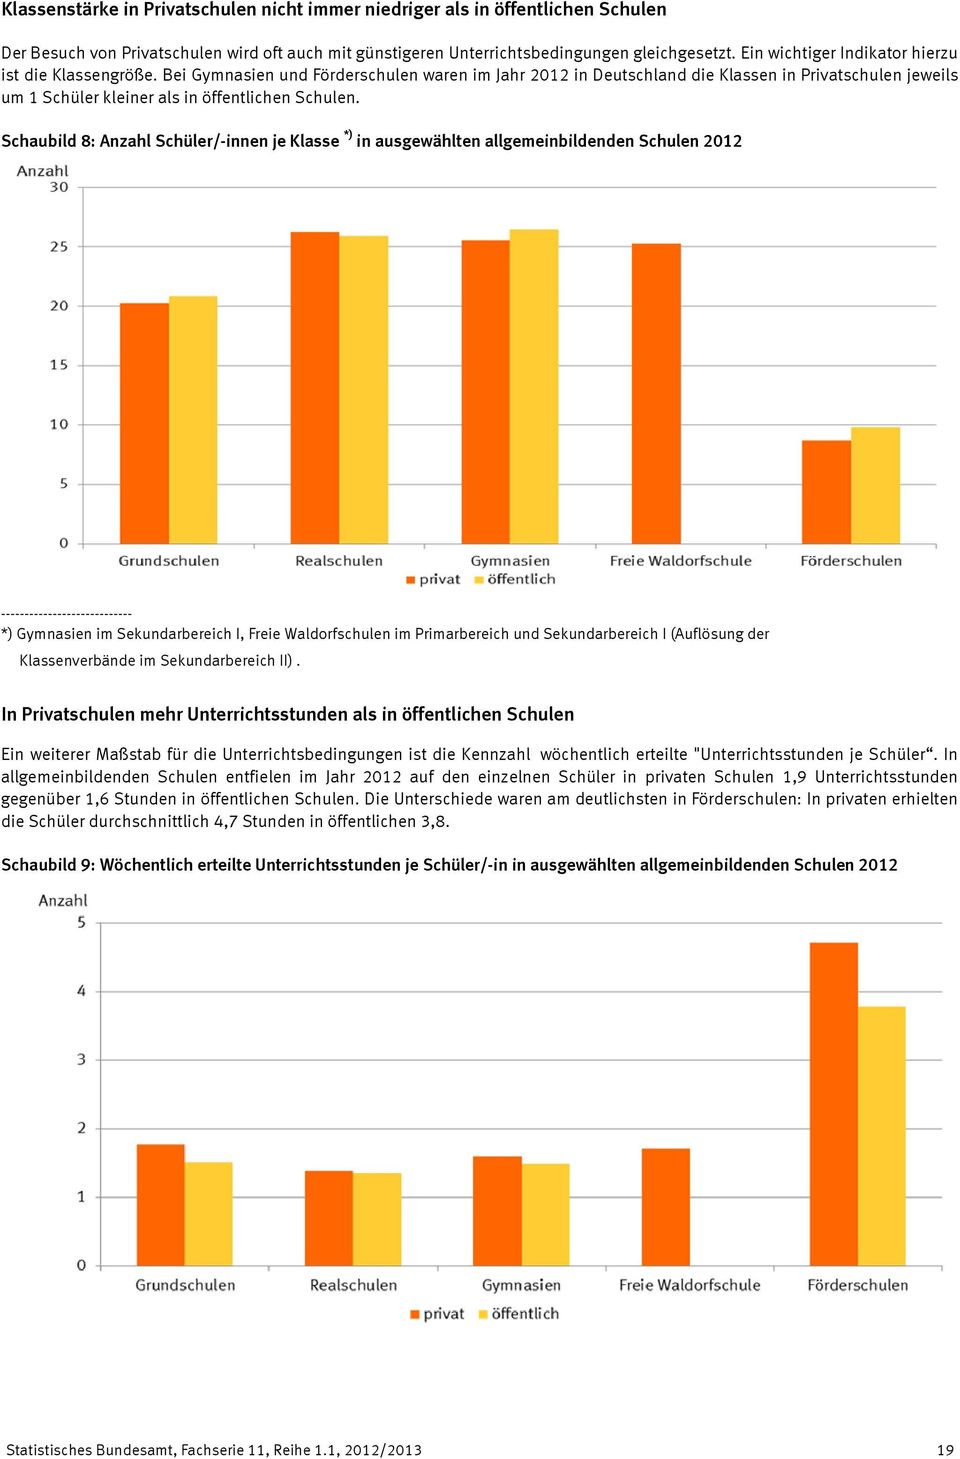 Bei Gymnasien und Förderschulen waren im Jahr 2012 in Deutschland die Klassen in Privatschulen jeweils um 1 Schüler kleiner als in öffentlichen Schulen.